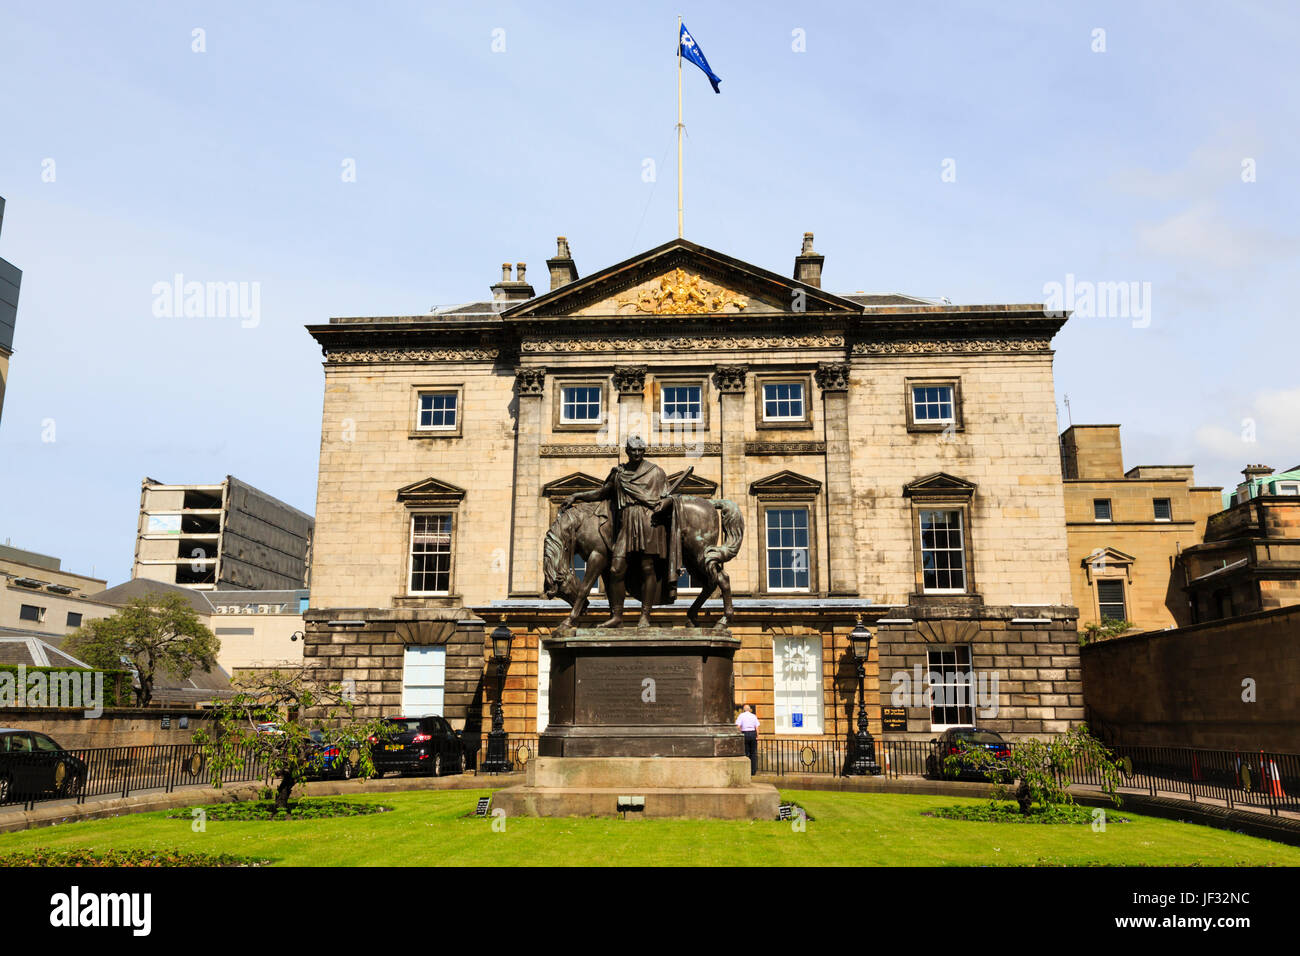 Royal Bank of Scotland, avec statue du Général Iohn John Hope, 4e comte d'Hopetoun. Edimbourg, Ecosse. Banque D'Images